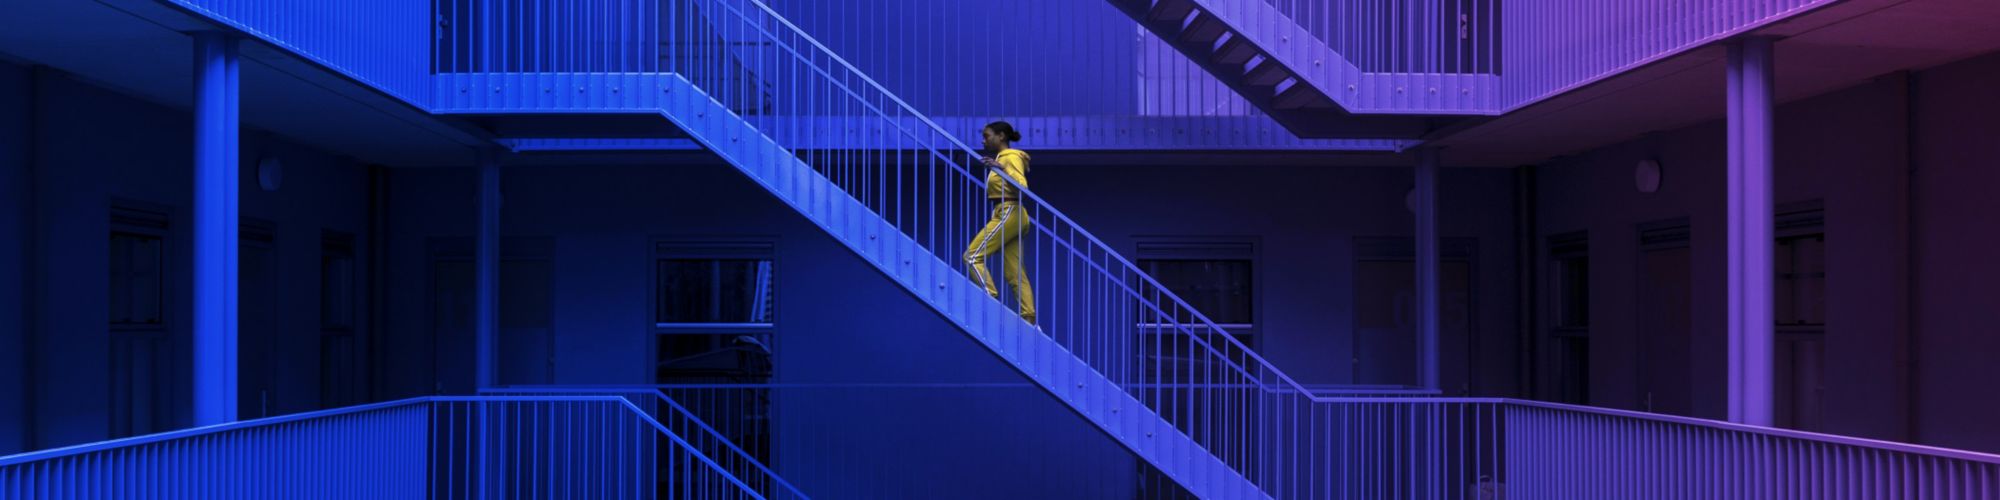 Femme qui monte un escalier